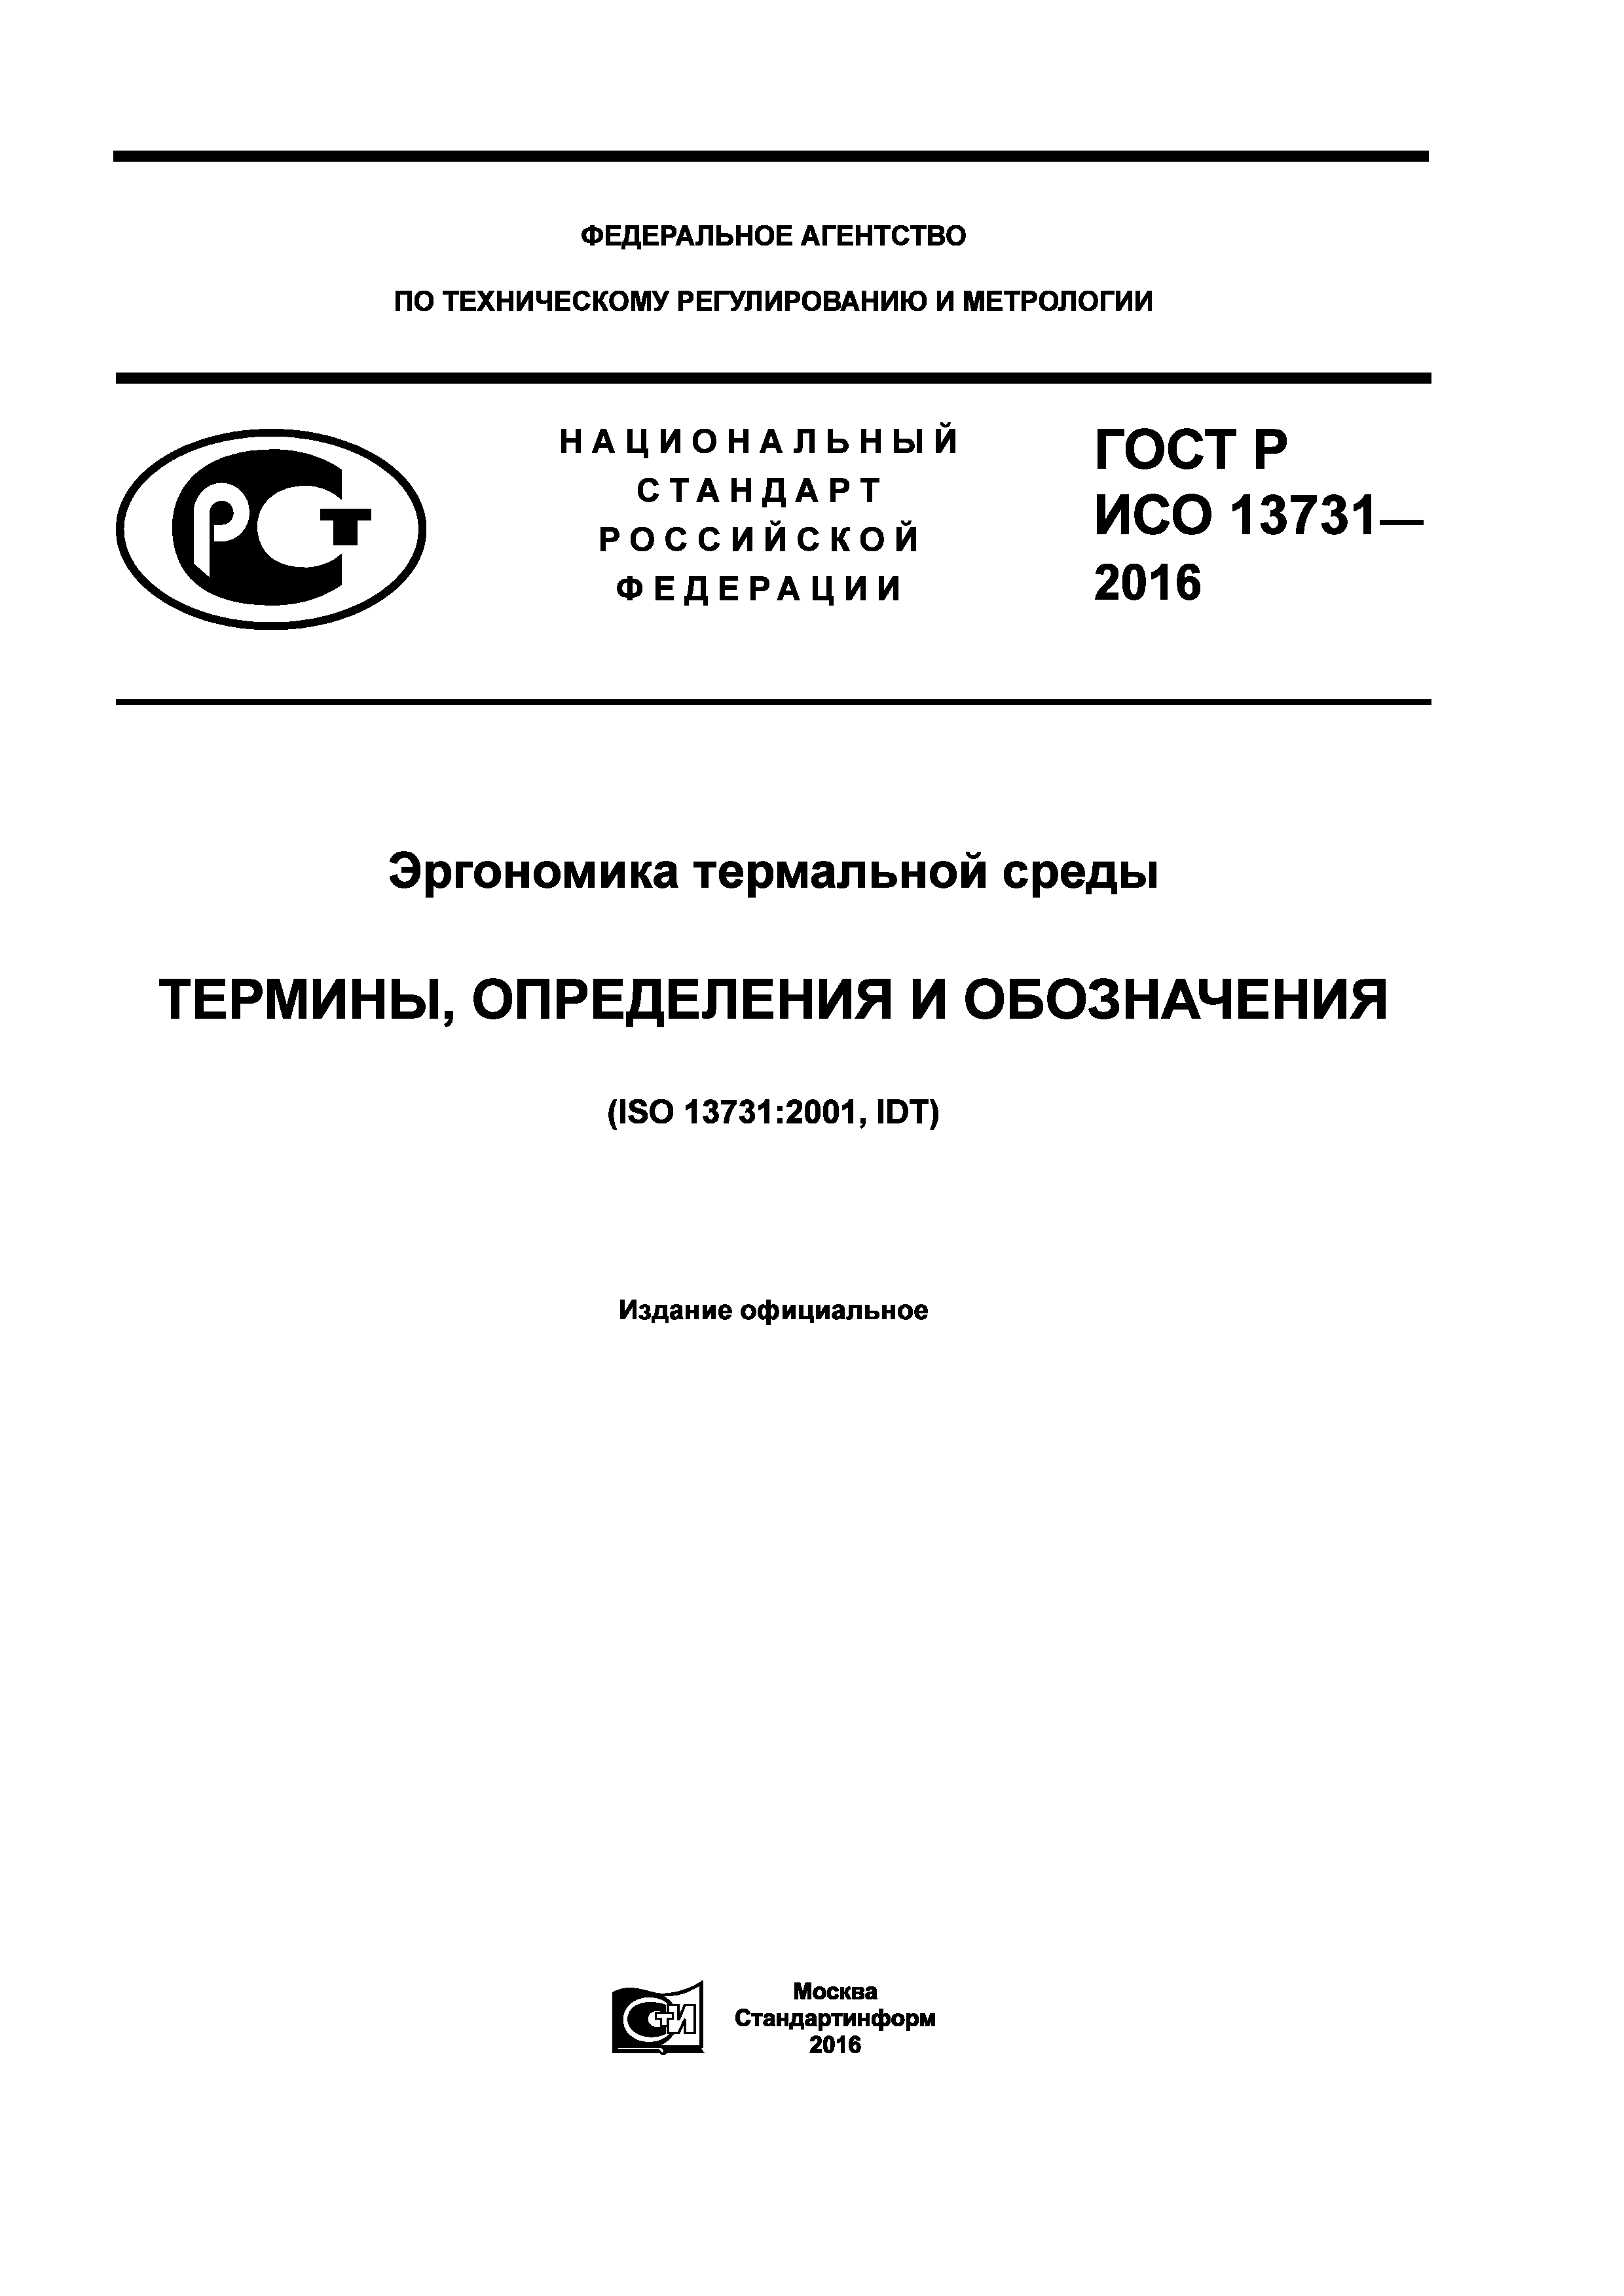 ГОСТ Р ИСО 13731-2016